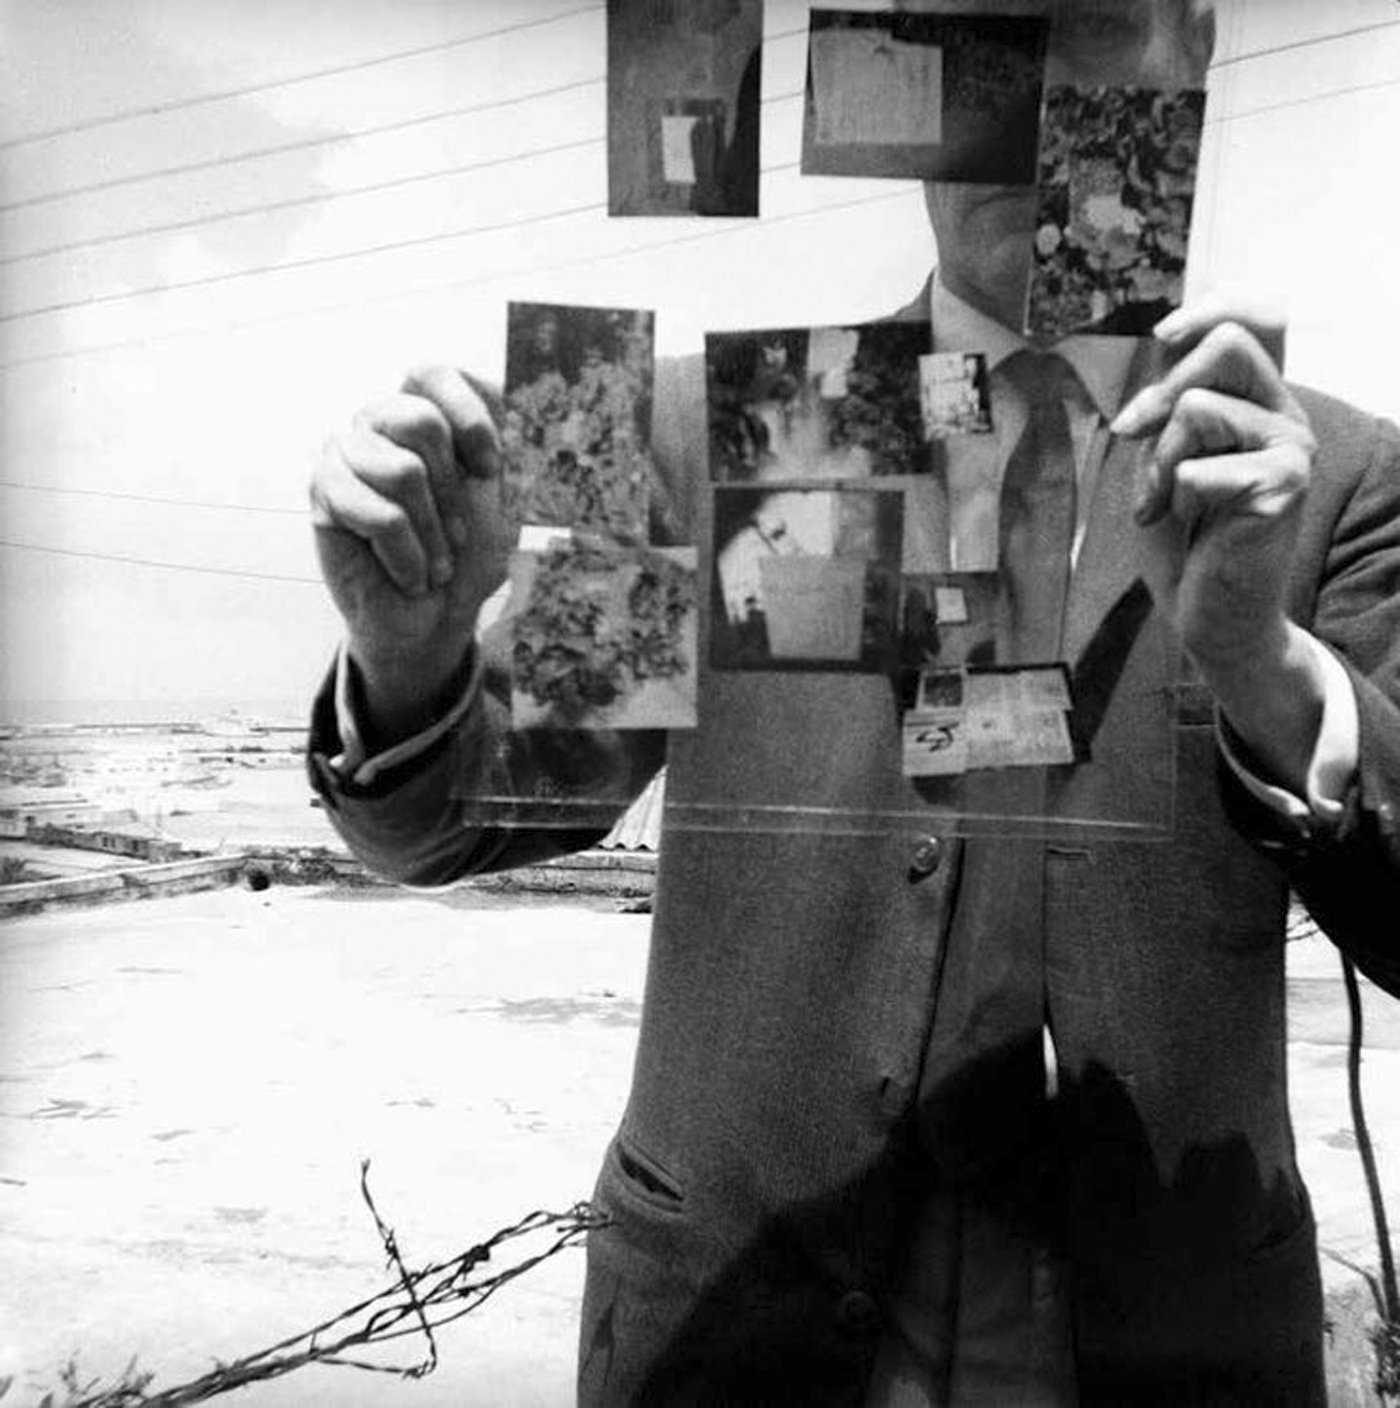 William Burroughs, “Self-Portrait, Tangiers” (1964)